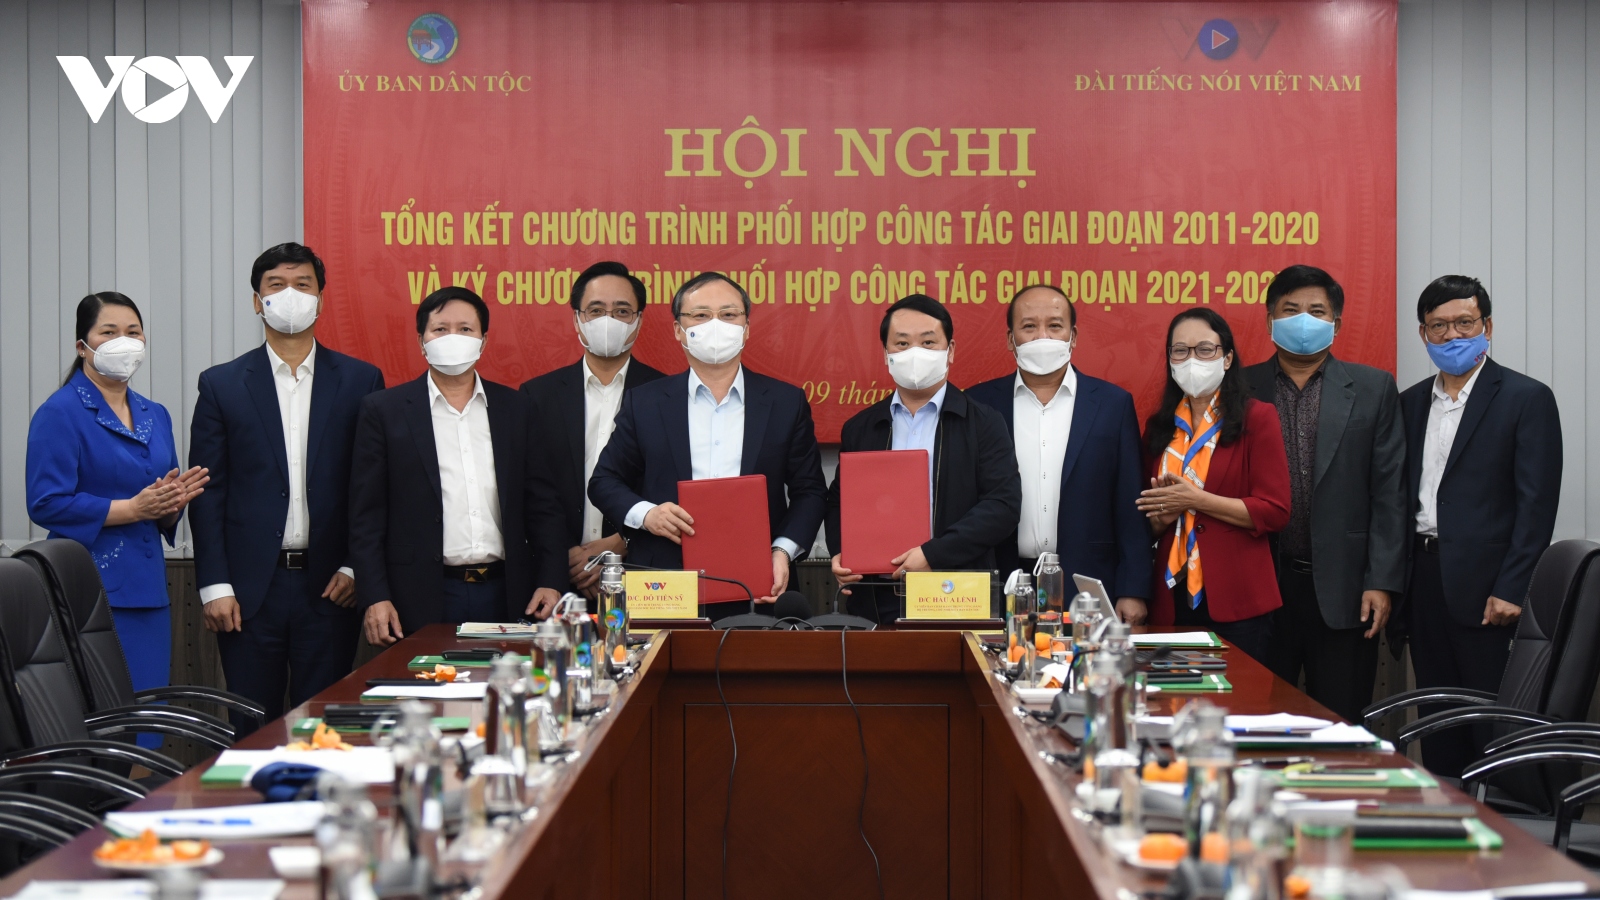 Đài Tiếng nói Việt Nam - Ủy ban Dân tộc: 10 năm đồng hành cùng đồng bào dân tộc thiểu số